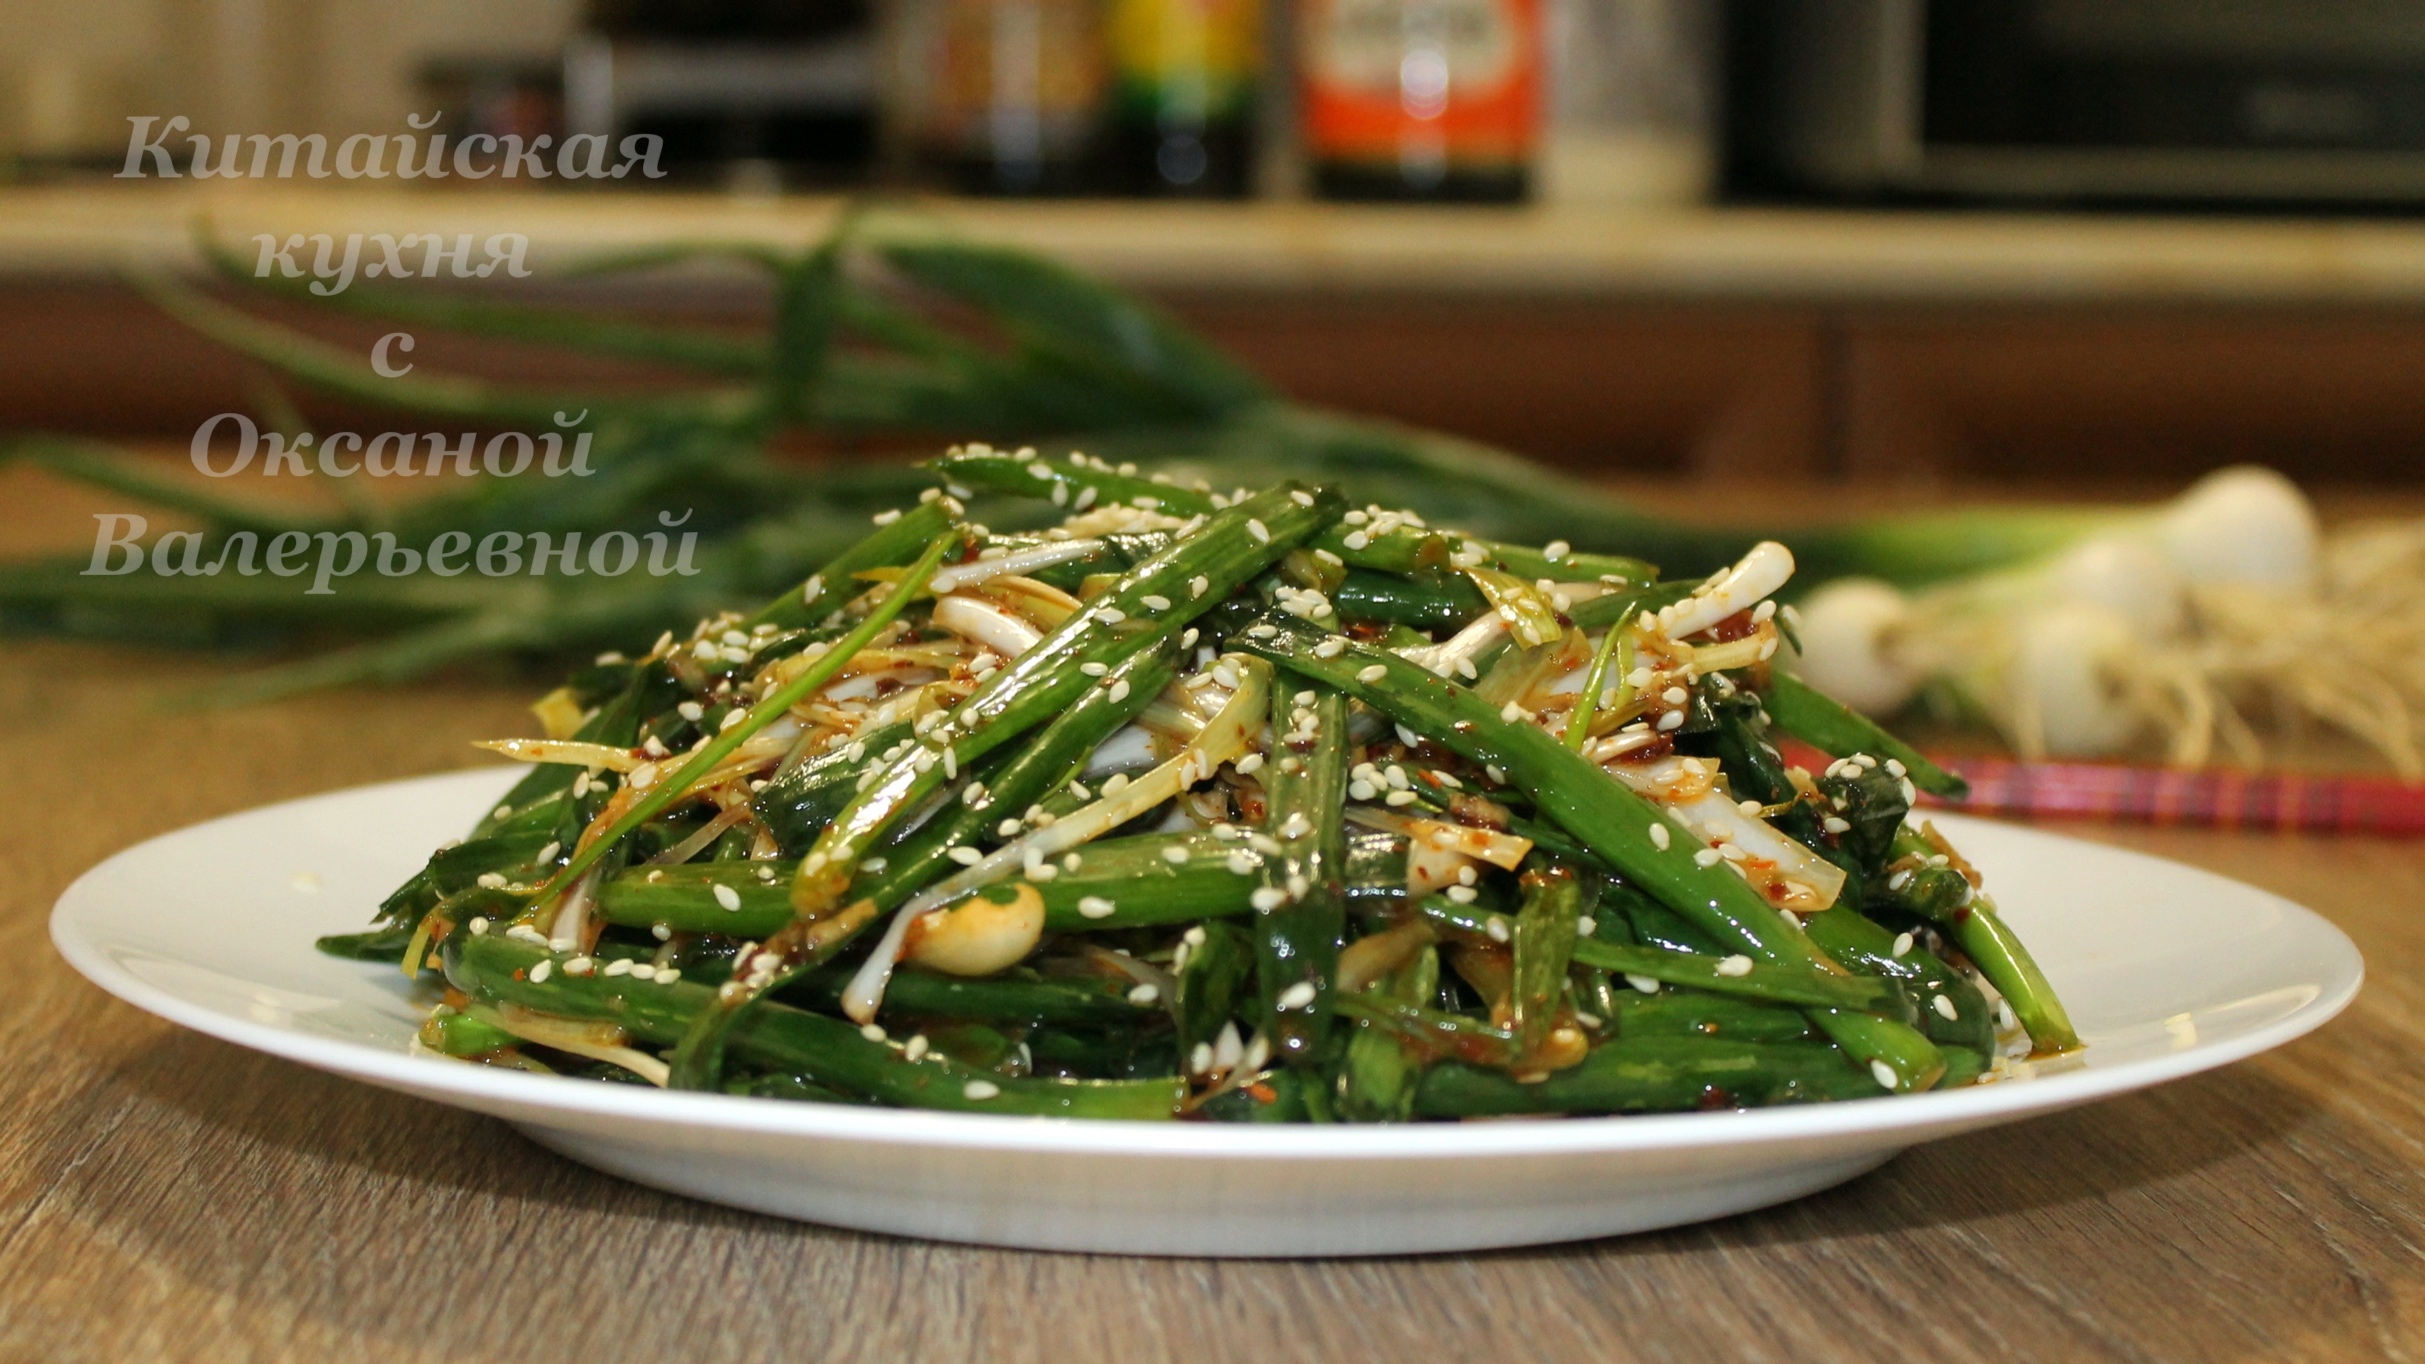 Острый салат из зеленого лука по-китайски. Китайская кухня с Оксаной Валерьевной.